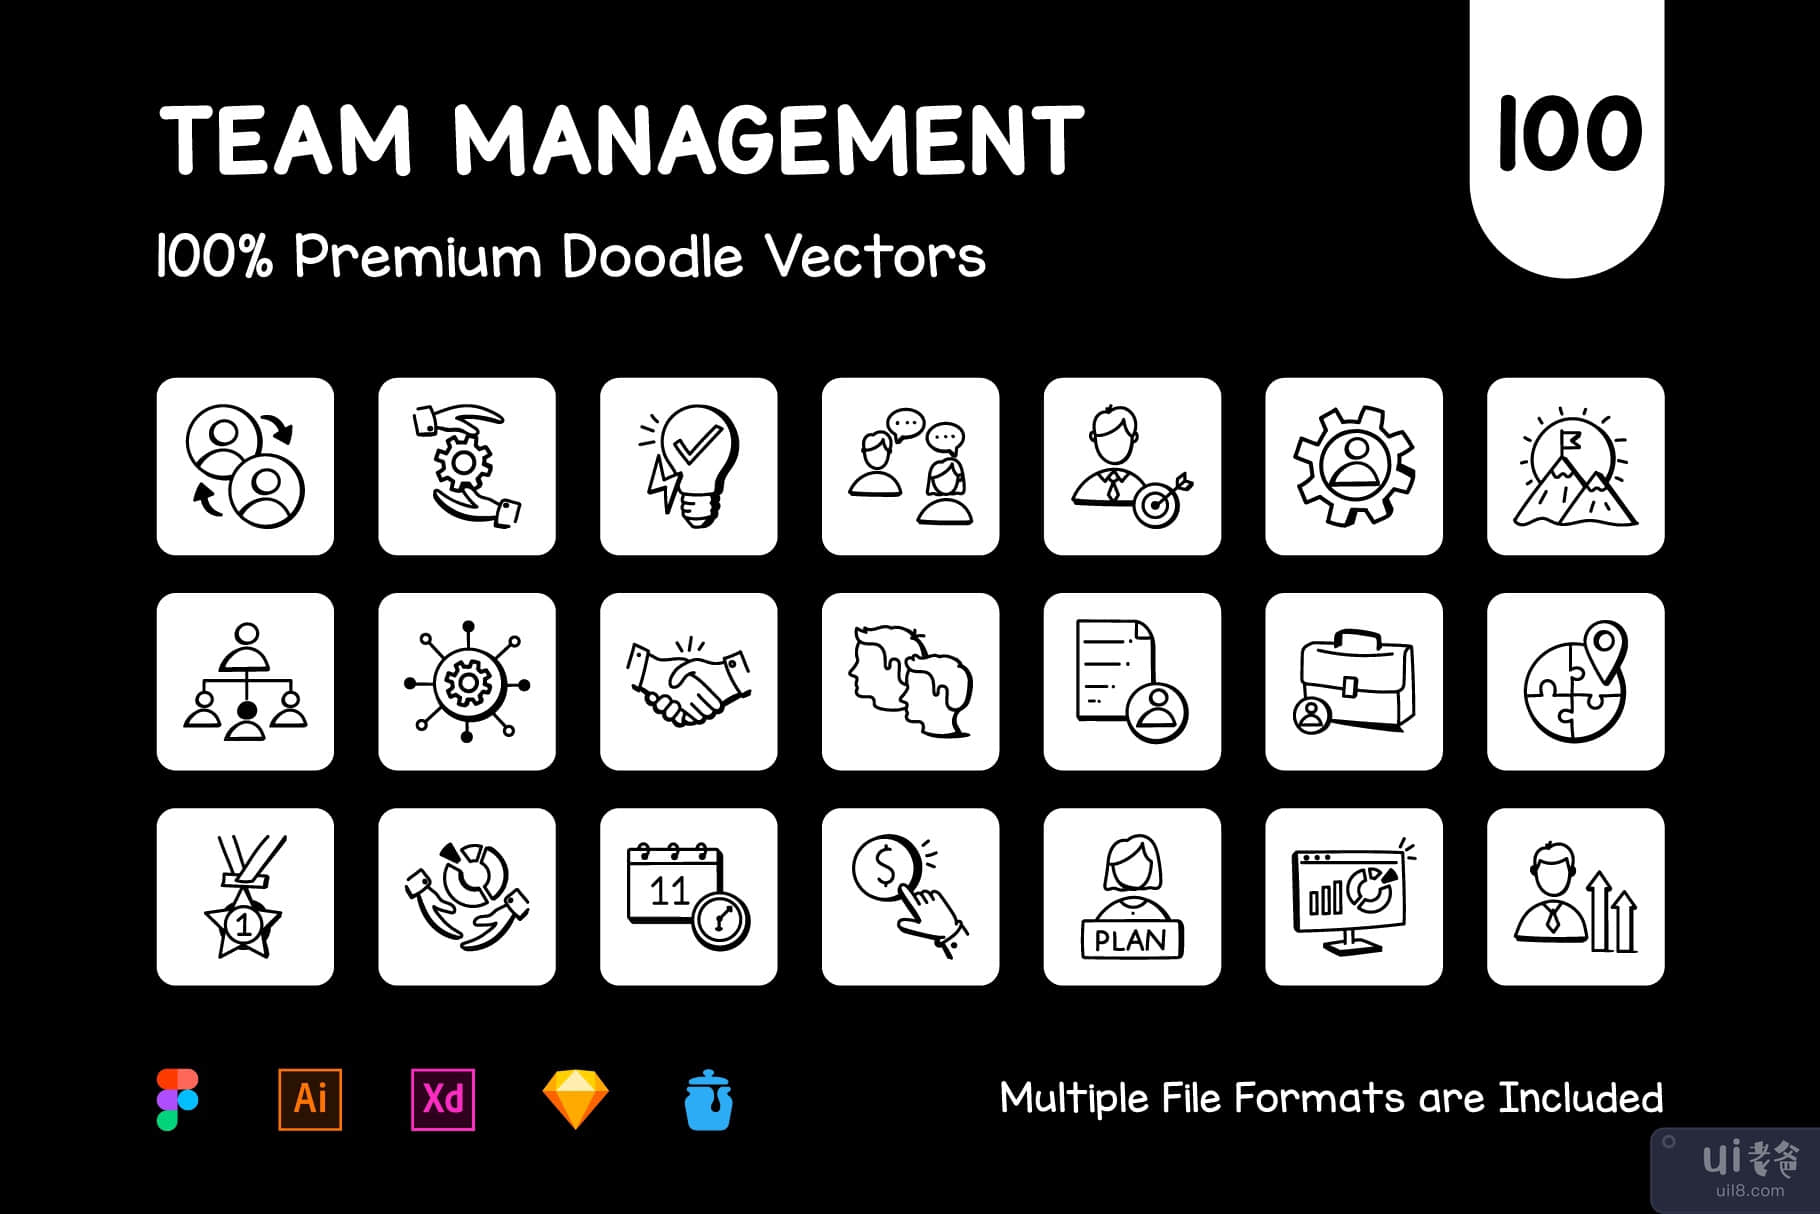 100 个管理团队图标矢量图(100 Management Team Icon Vectors)插图8